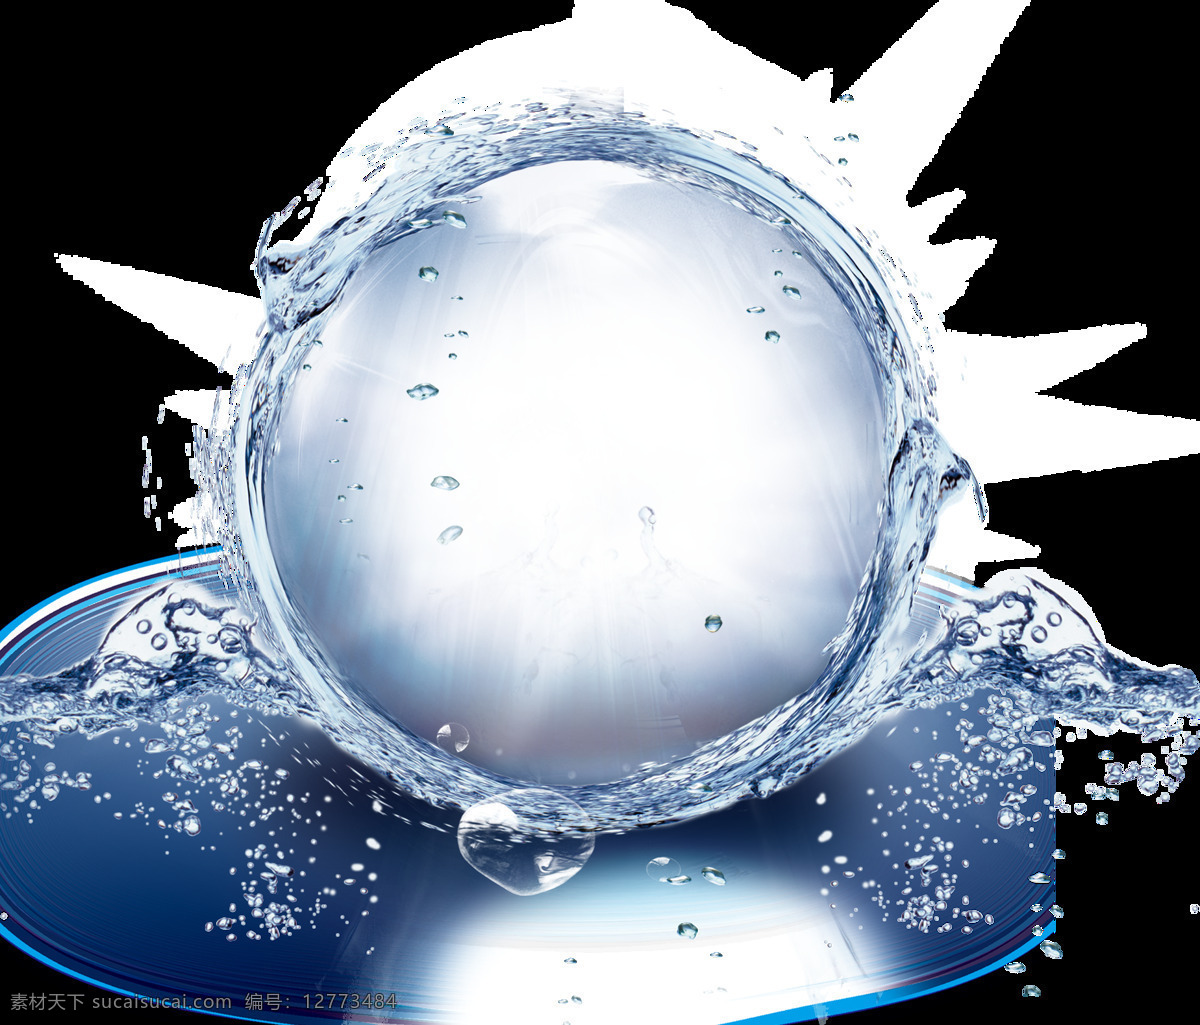 海报素材水球 水泡 水球 水晶球 蓝色蓝色泡泡 化妆品素材